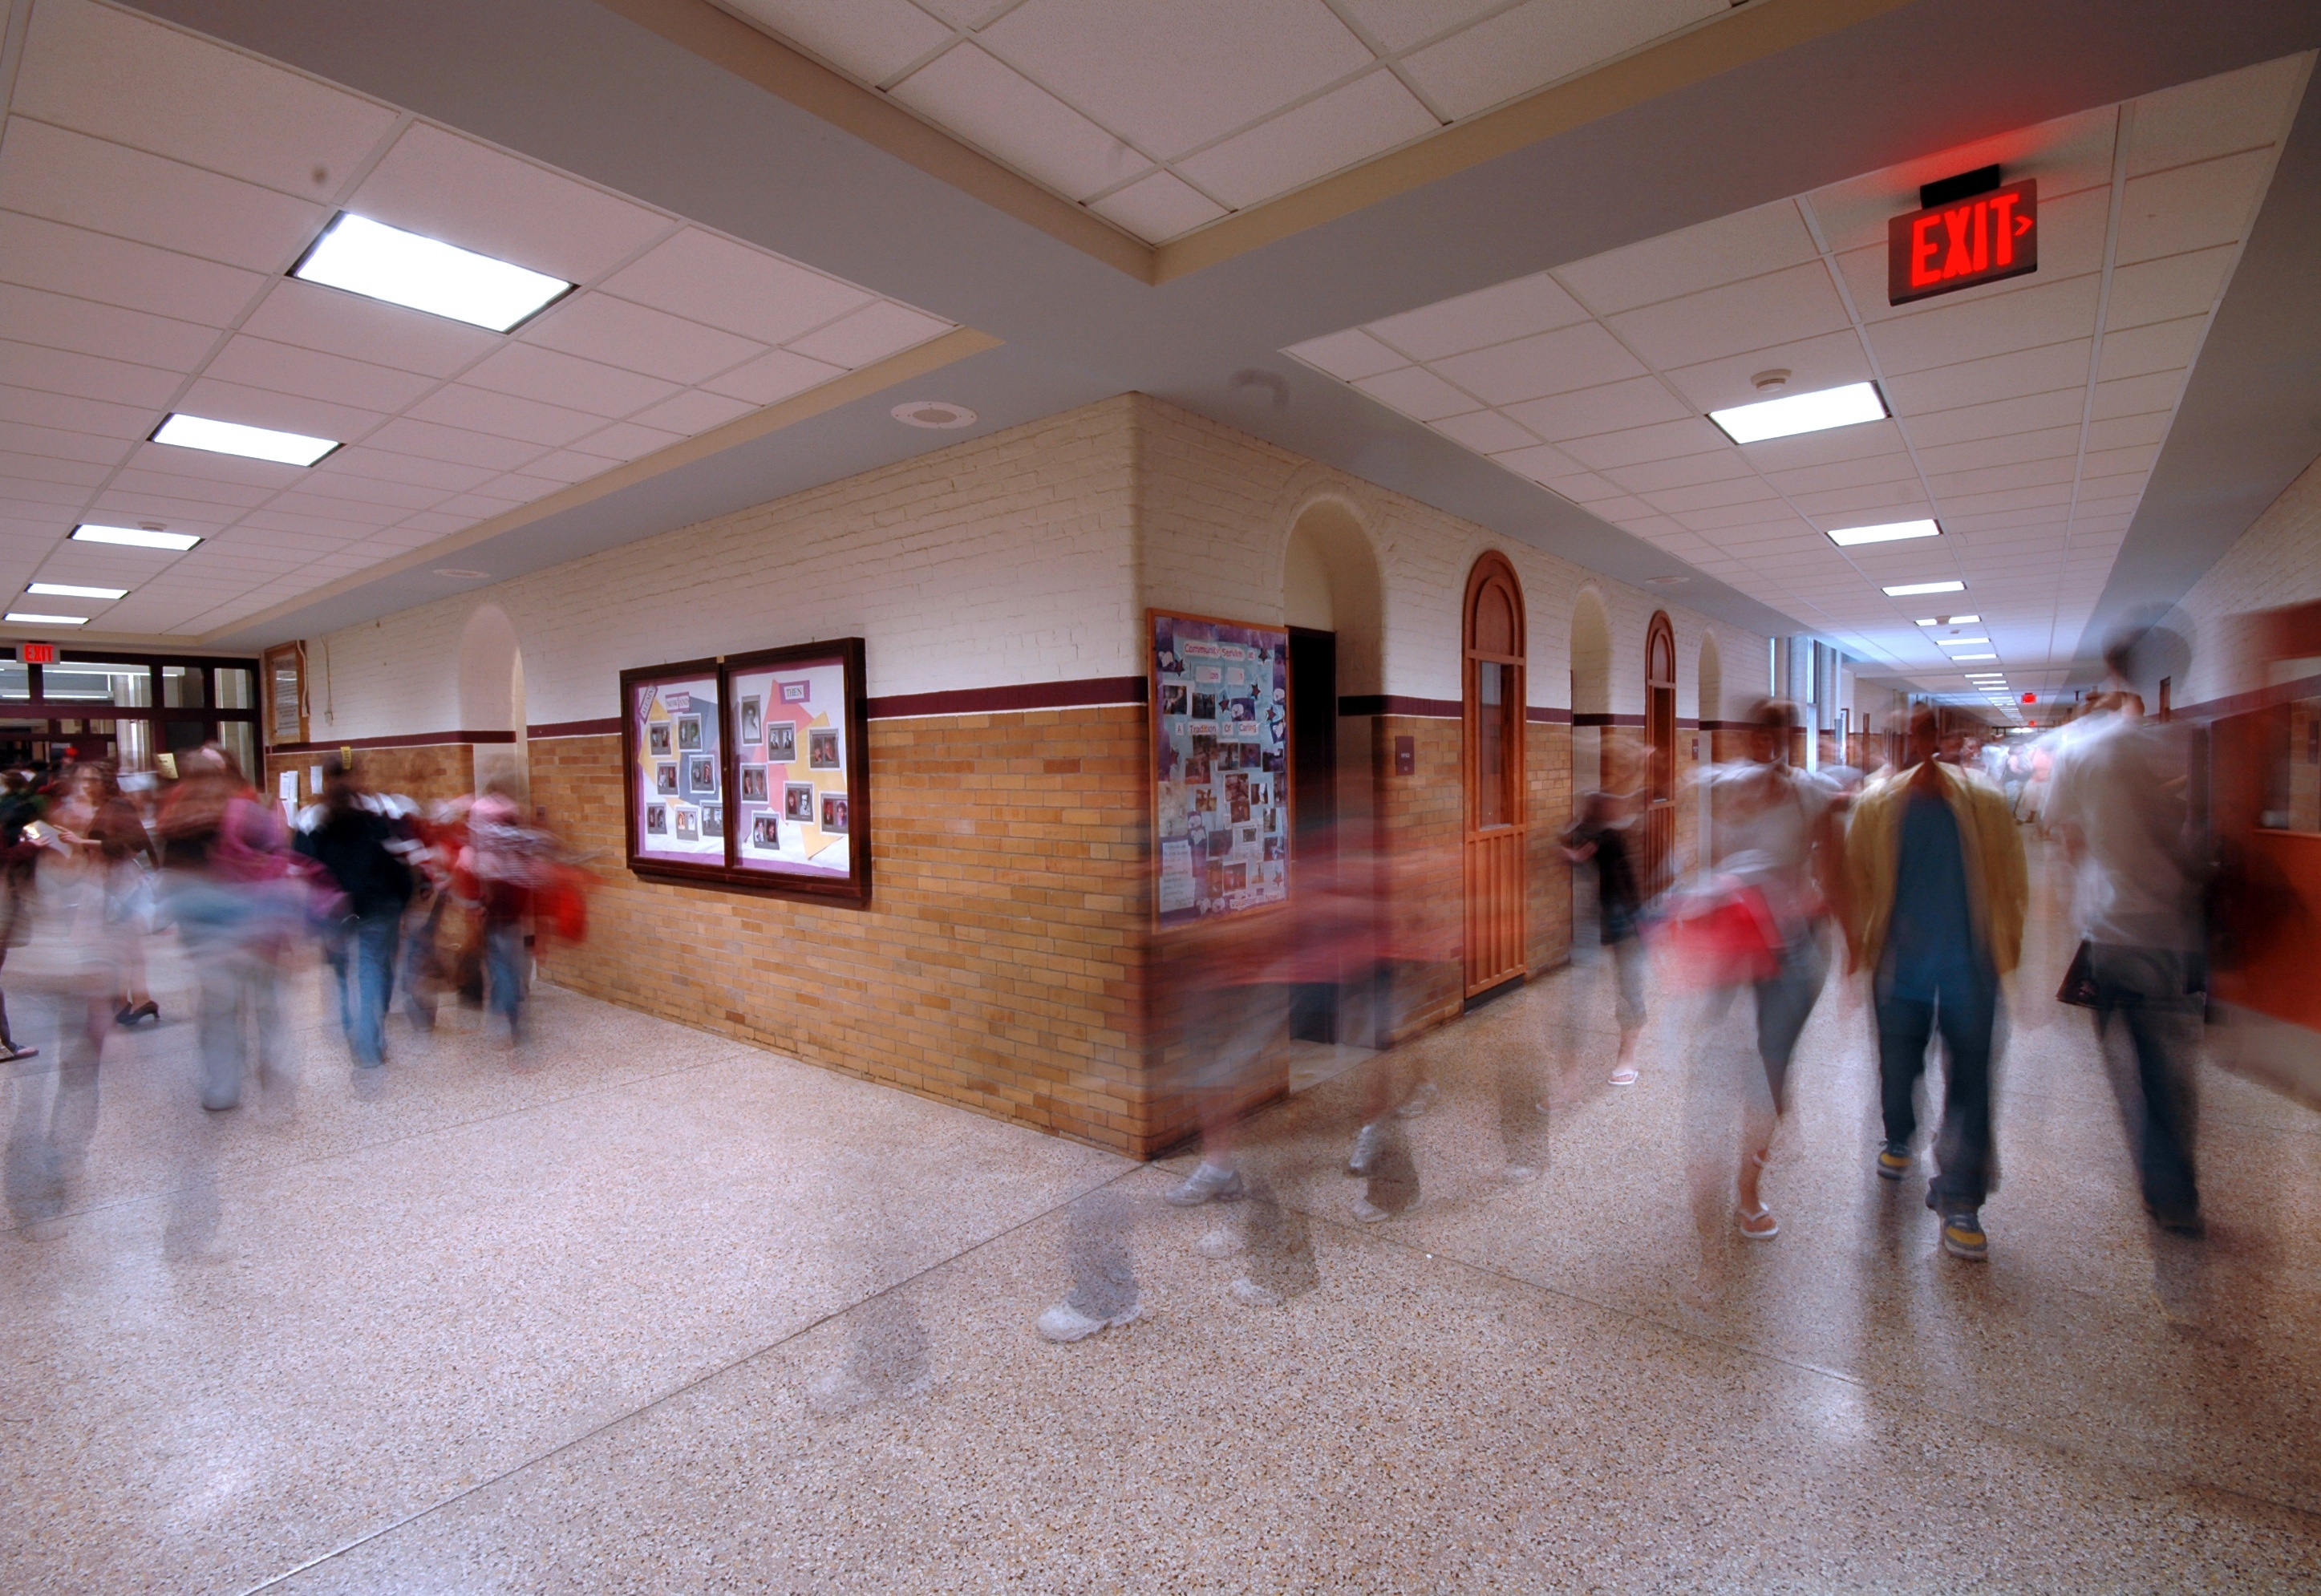 Busy school hallway